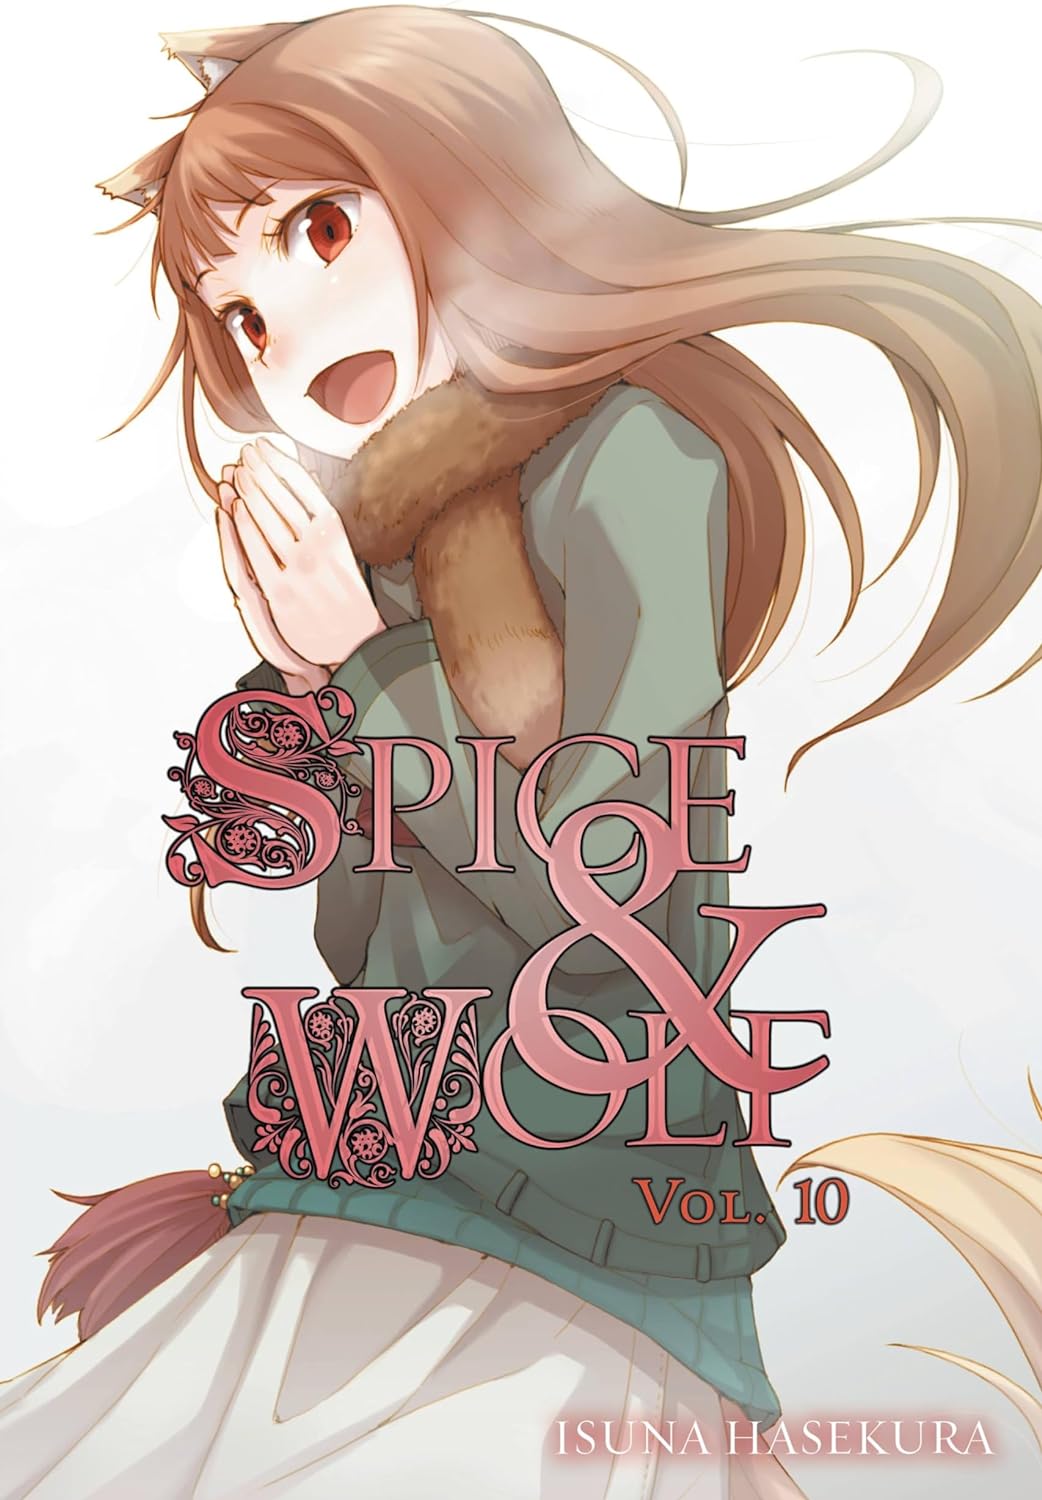 Isuna Hasekura: Spice & Wolf, Vol. 10 (2017, Orbit)